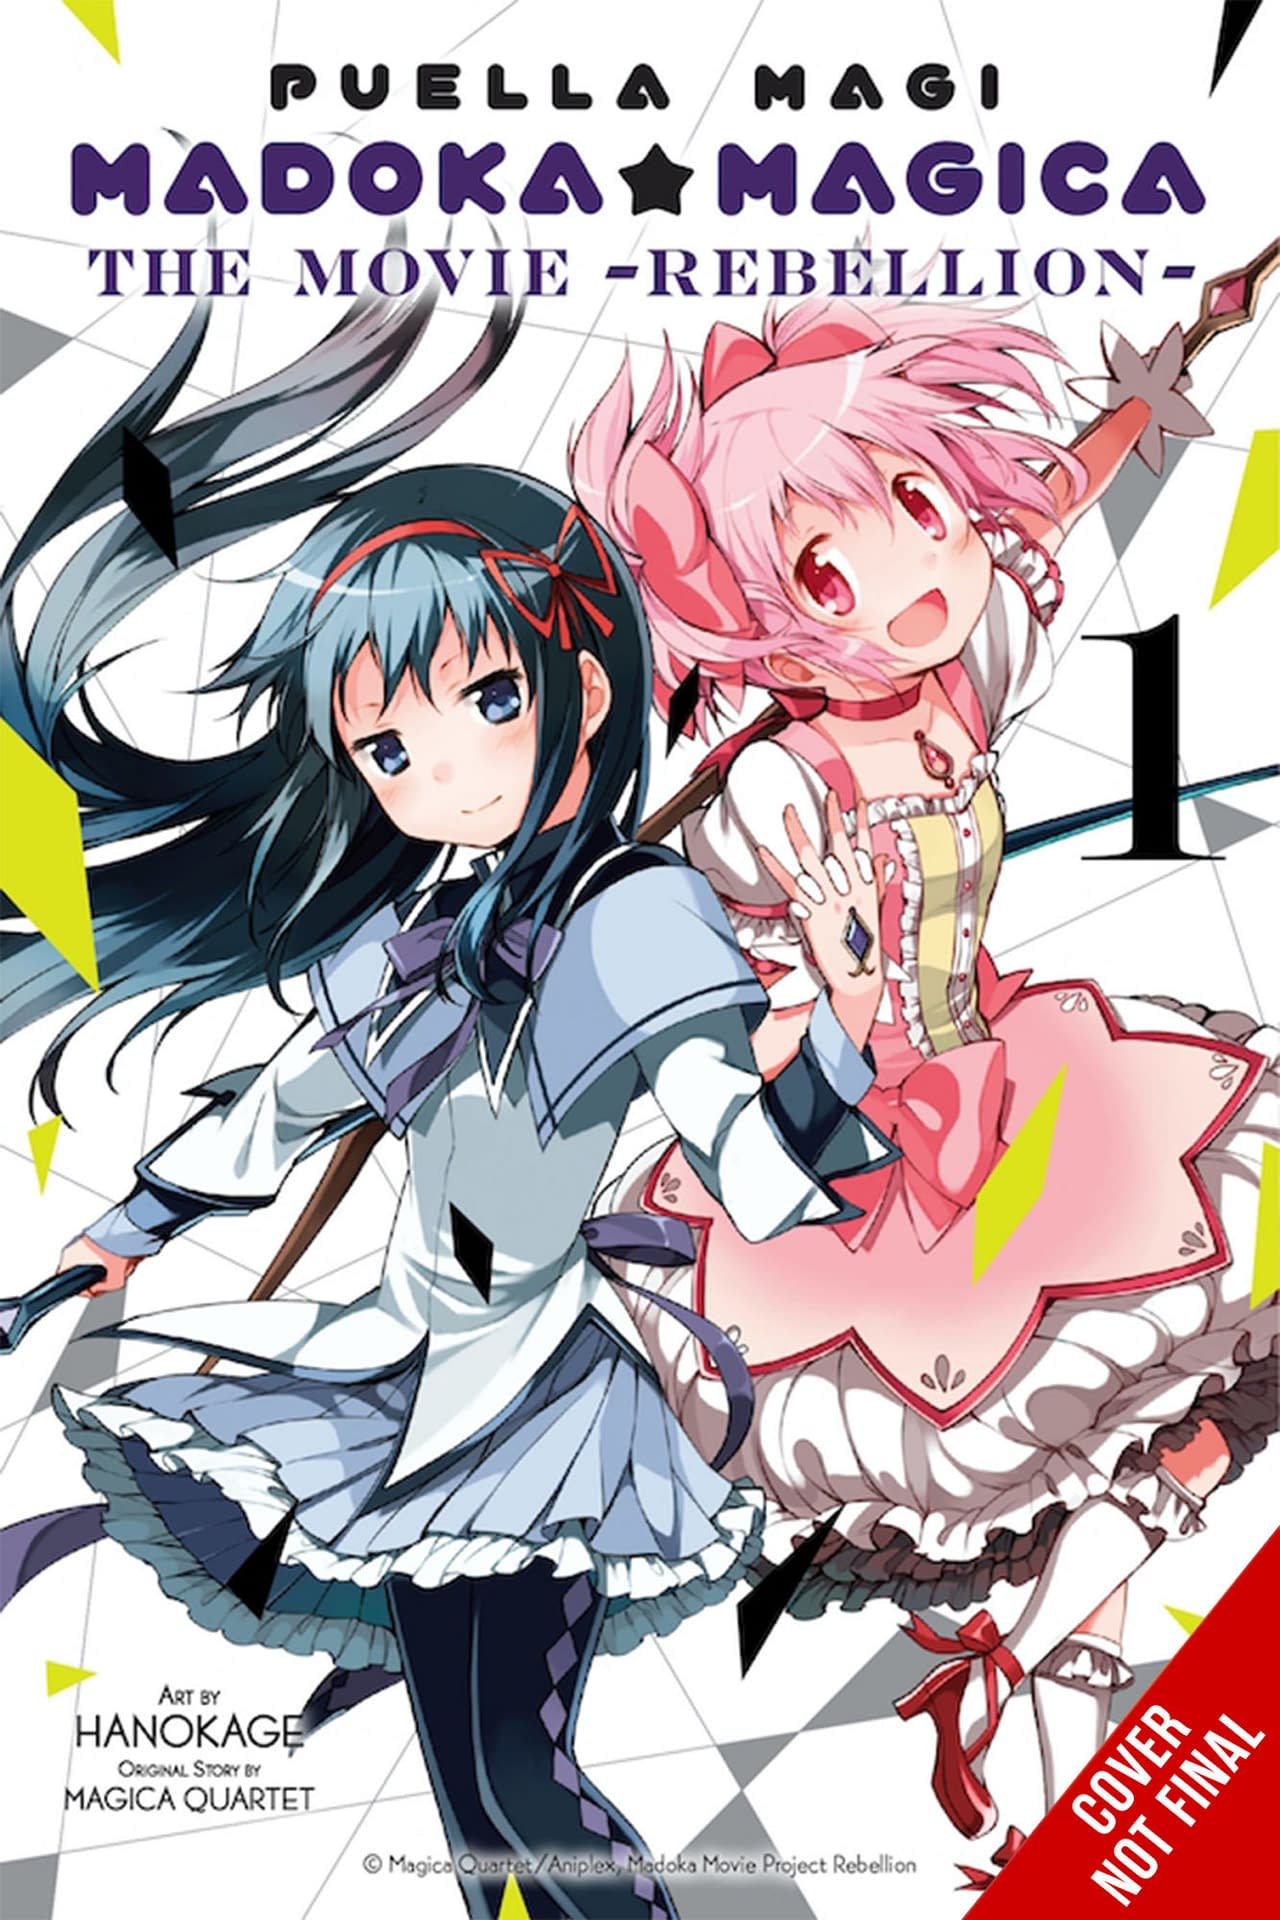 Anime Corner on X: Happy birthday to the rebellious Izumi